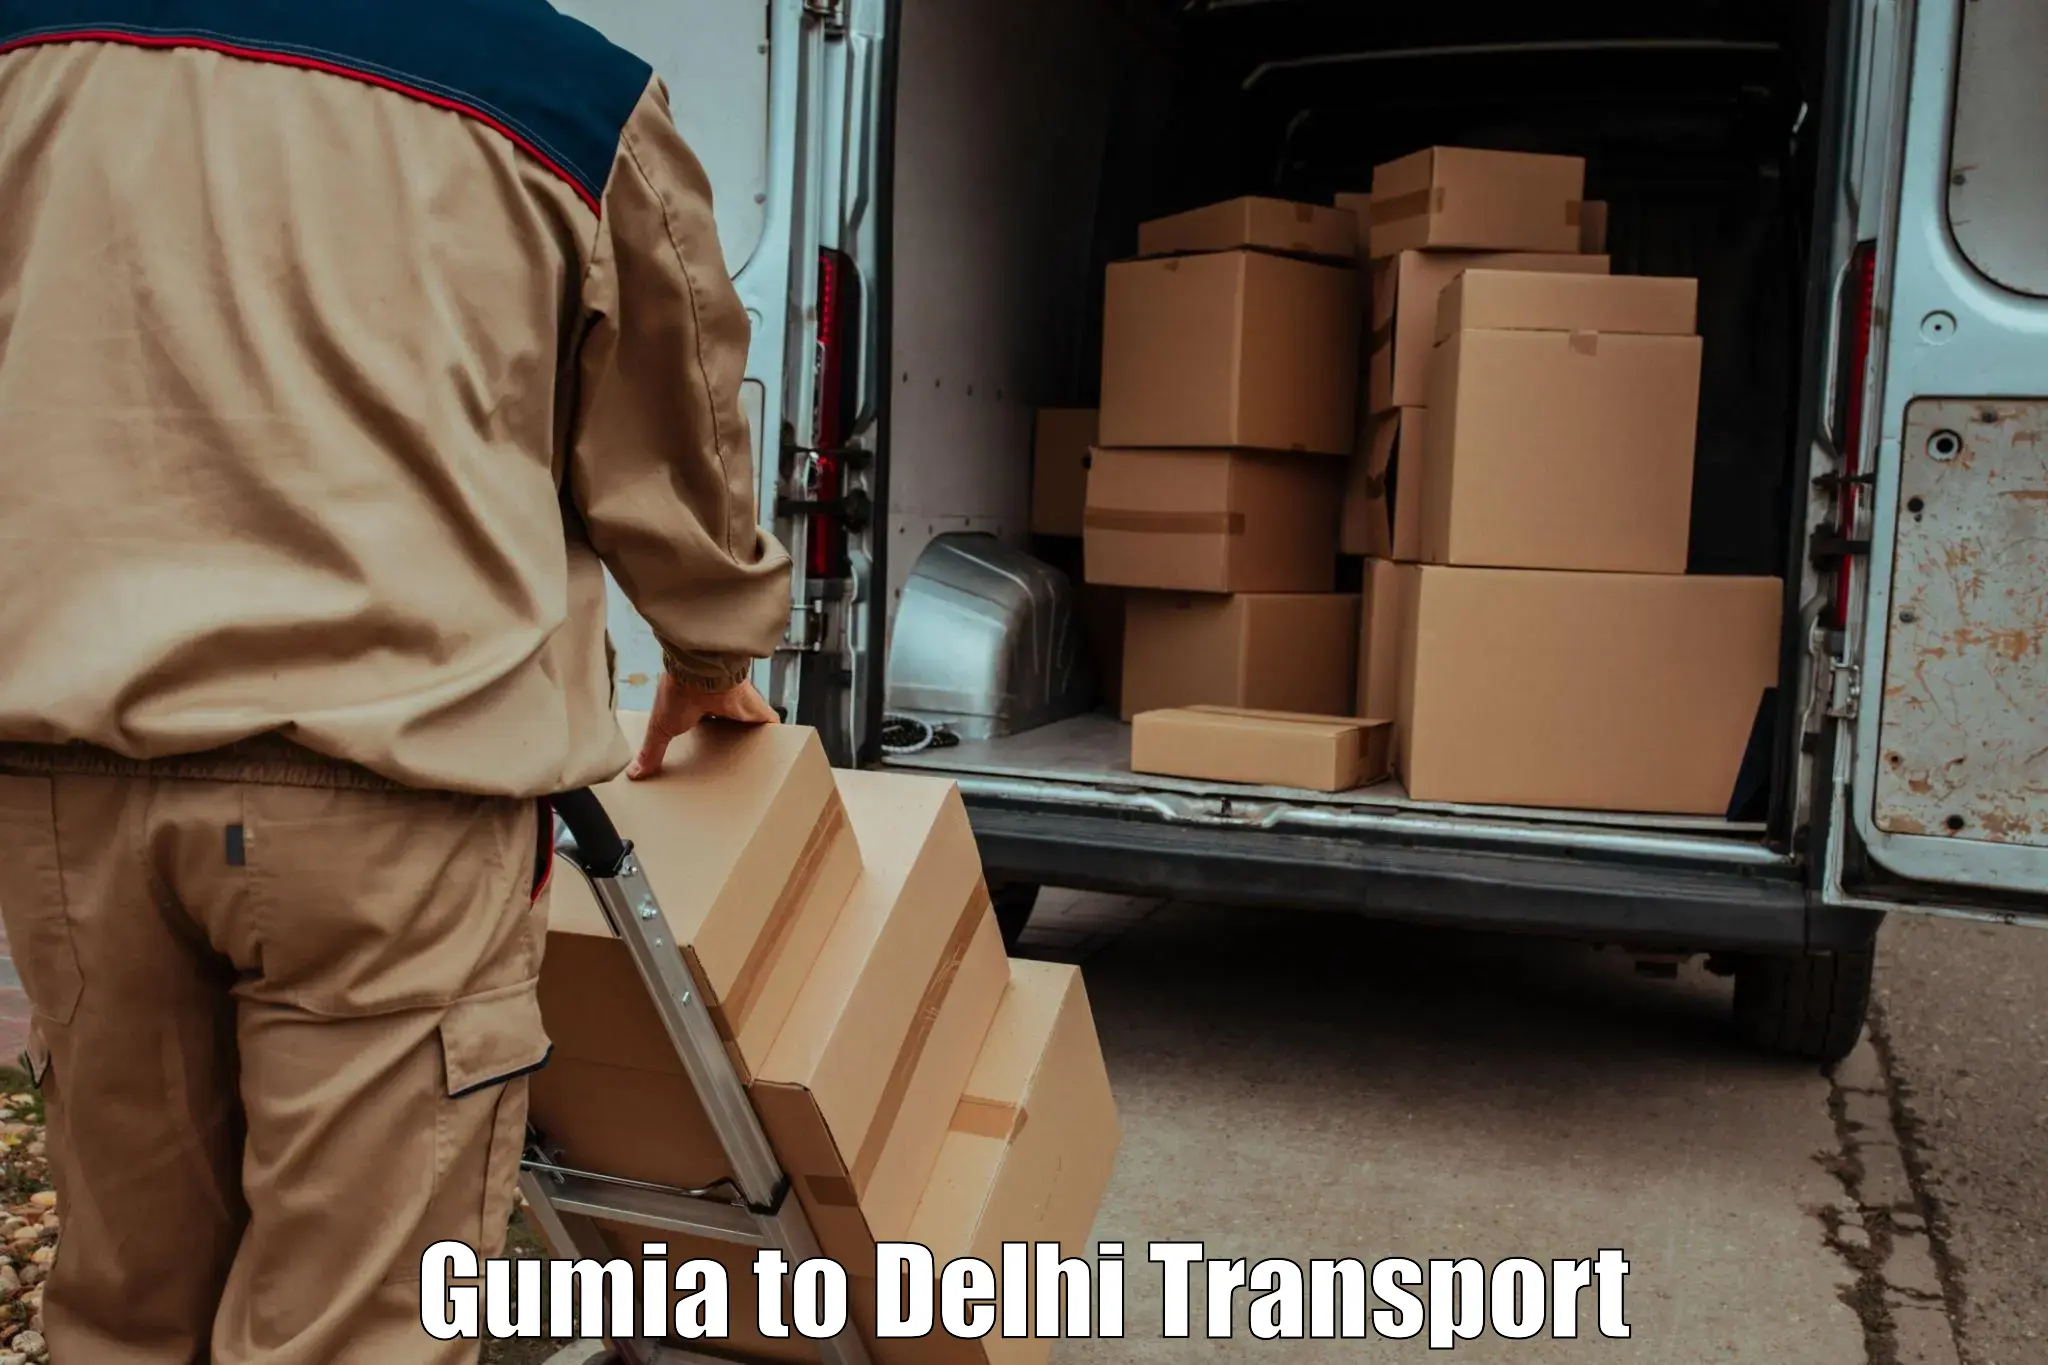 Nearest transport service in Gumia to Delhi